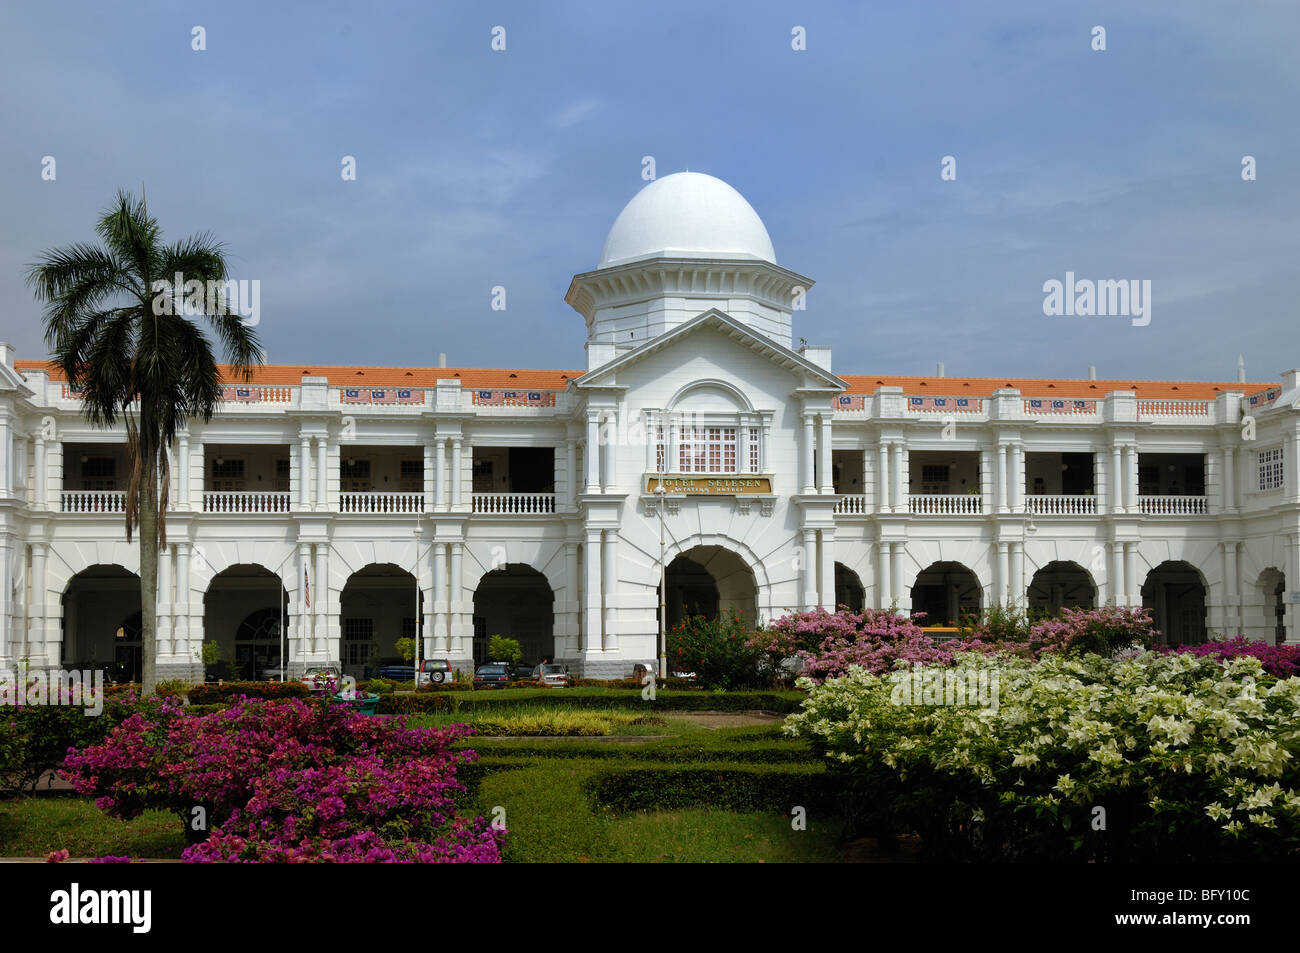 Gare d'Ipoh Gare de l'époque coloniale (1907), et Majestic Hotel, par Arthur Benison Hubback, dans le style néo-mauresque, Ipoh, Perak, Malaisie Banque D'Images